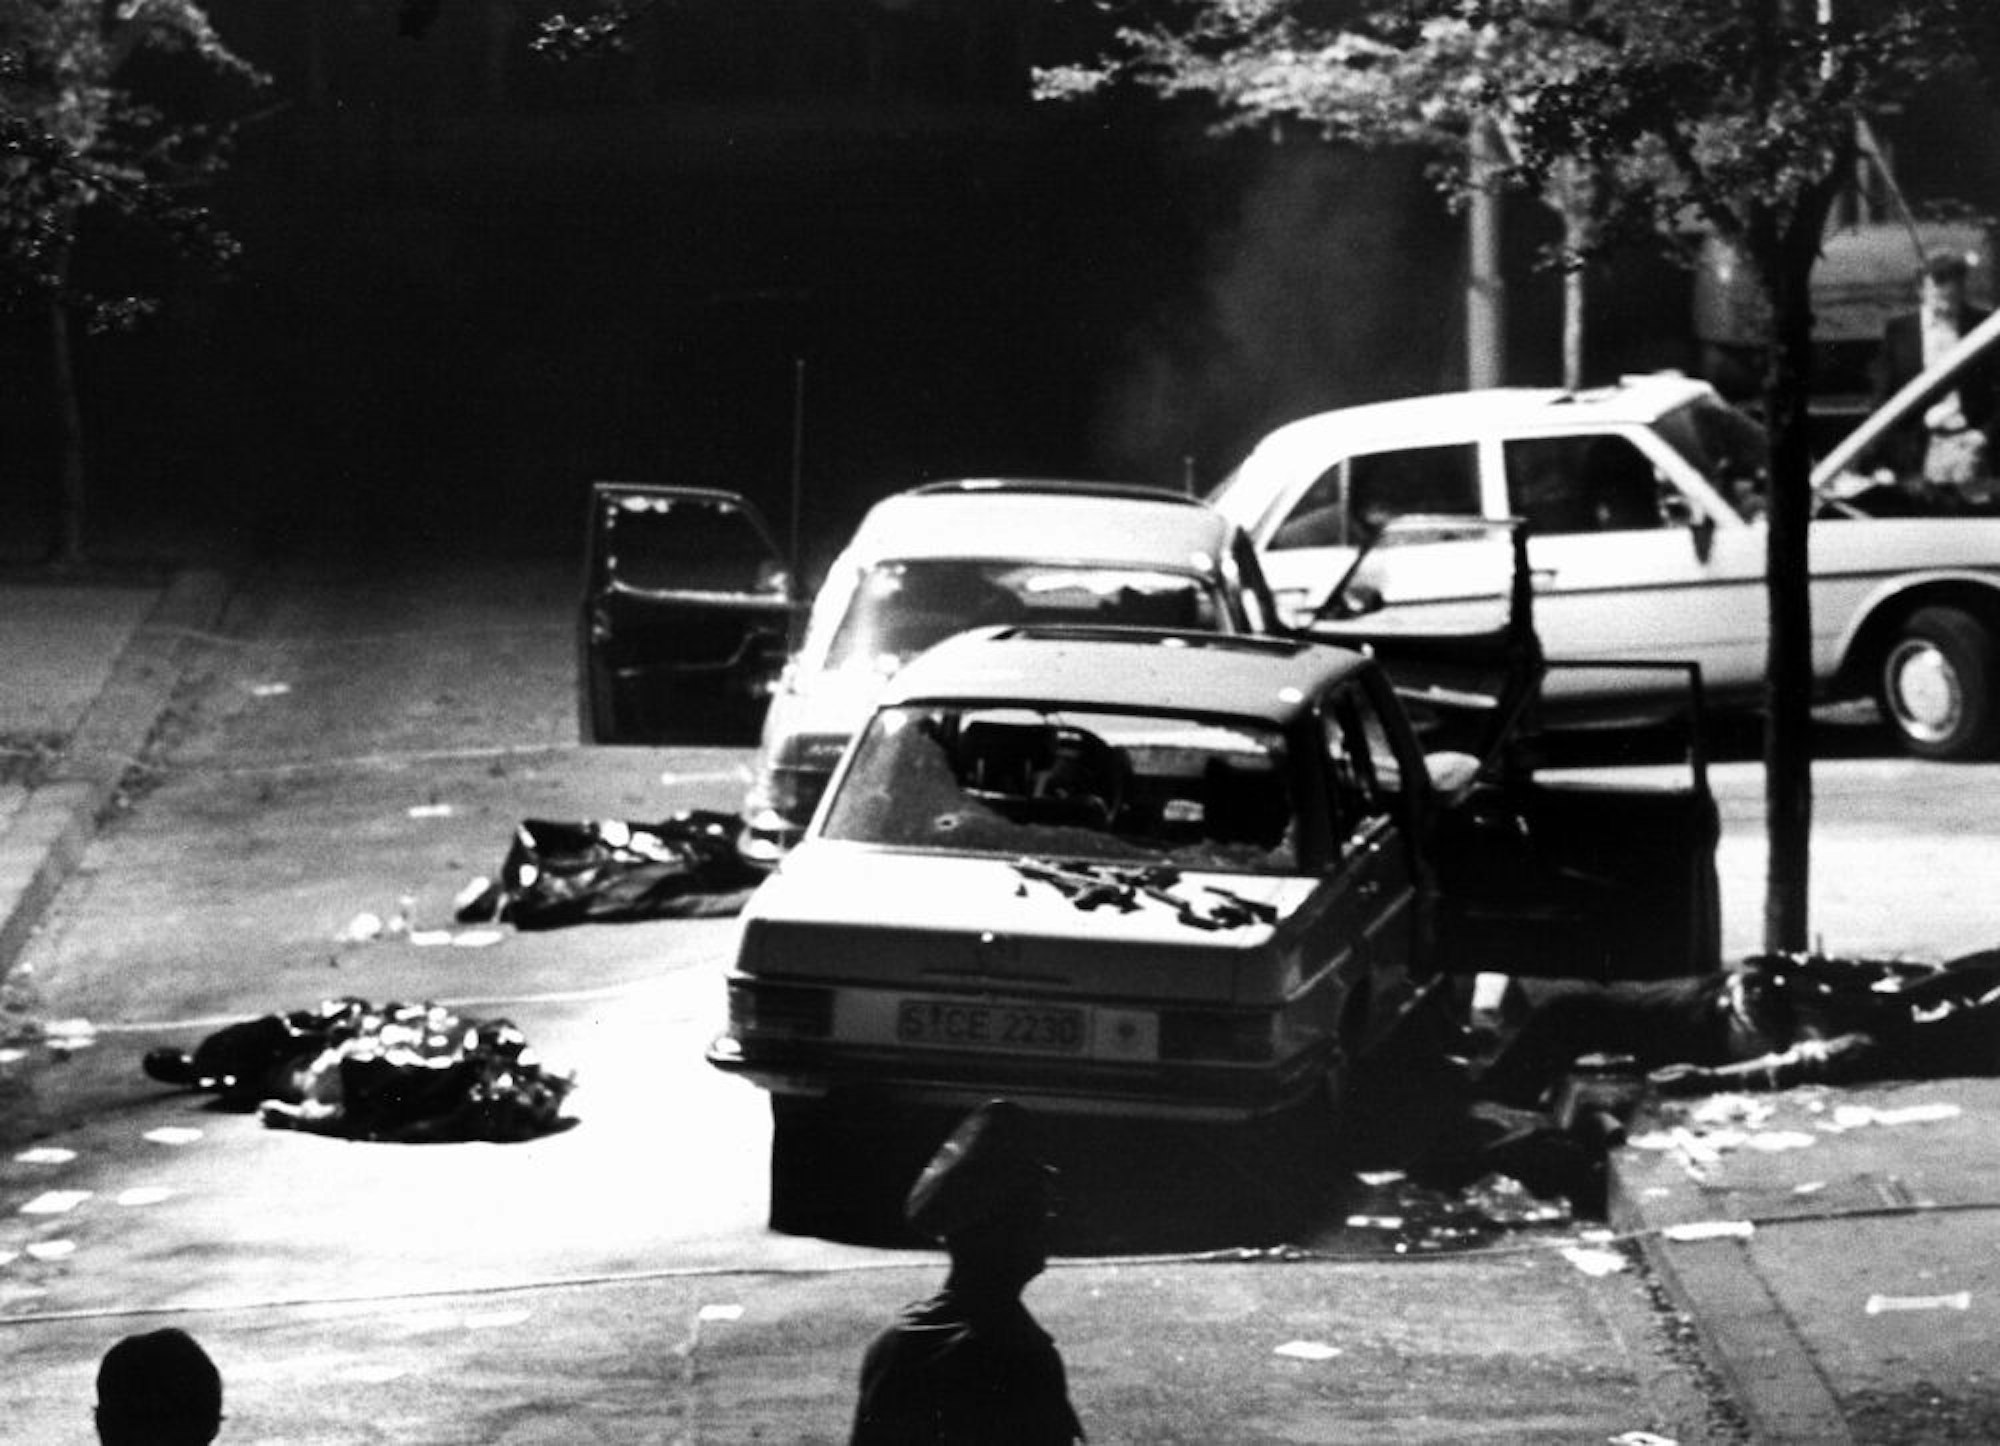 Tatort Köln, Vincenz-Statz-Straße im Stadtteil Braunsfeld: Am 5. September 1977 wurde hier Hanns-Martin Schleyer von RAF-Terroristen entführt, drei Polizisten und der Fahrer ermordet.